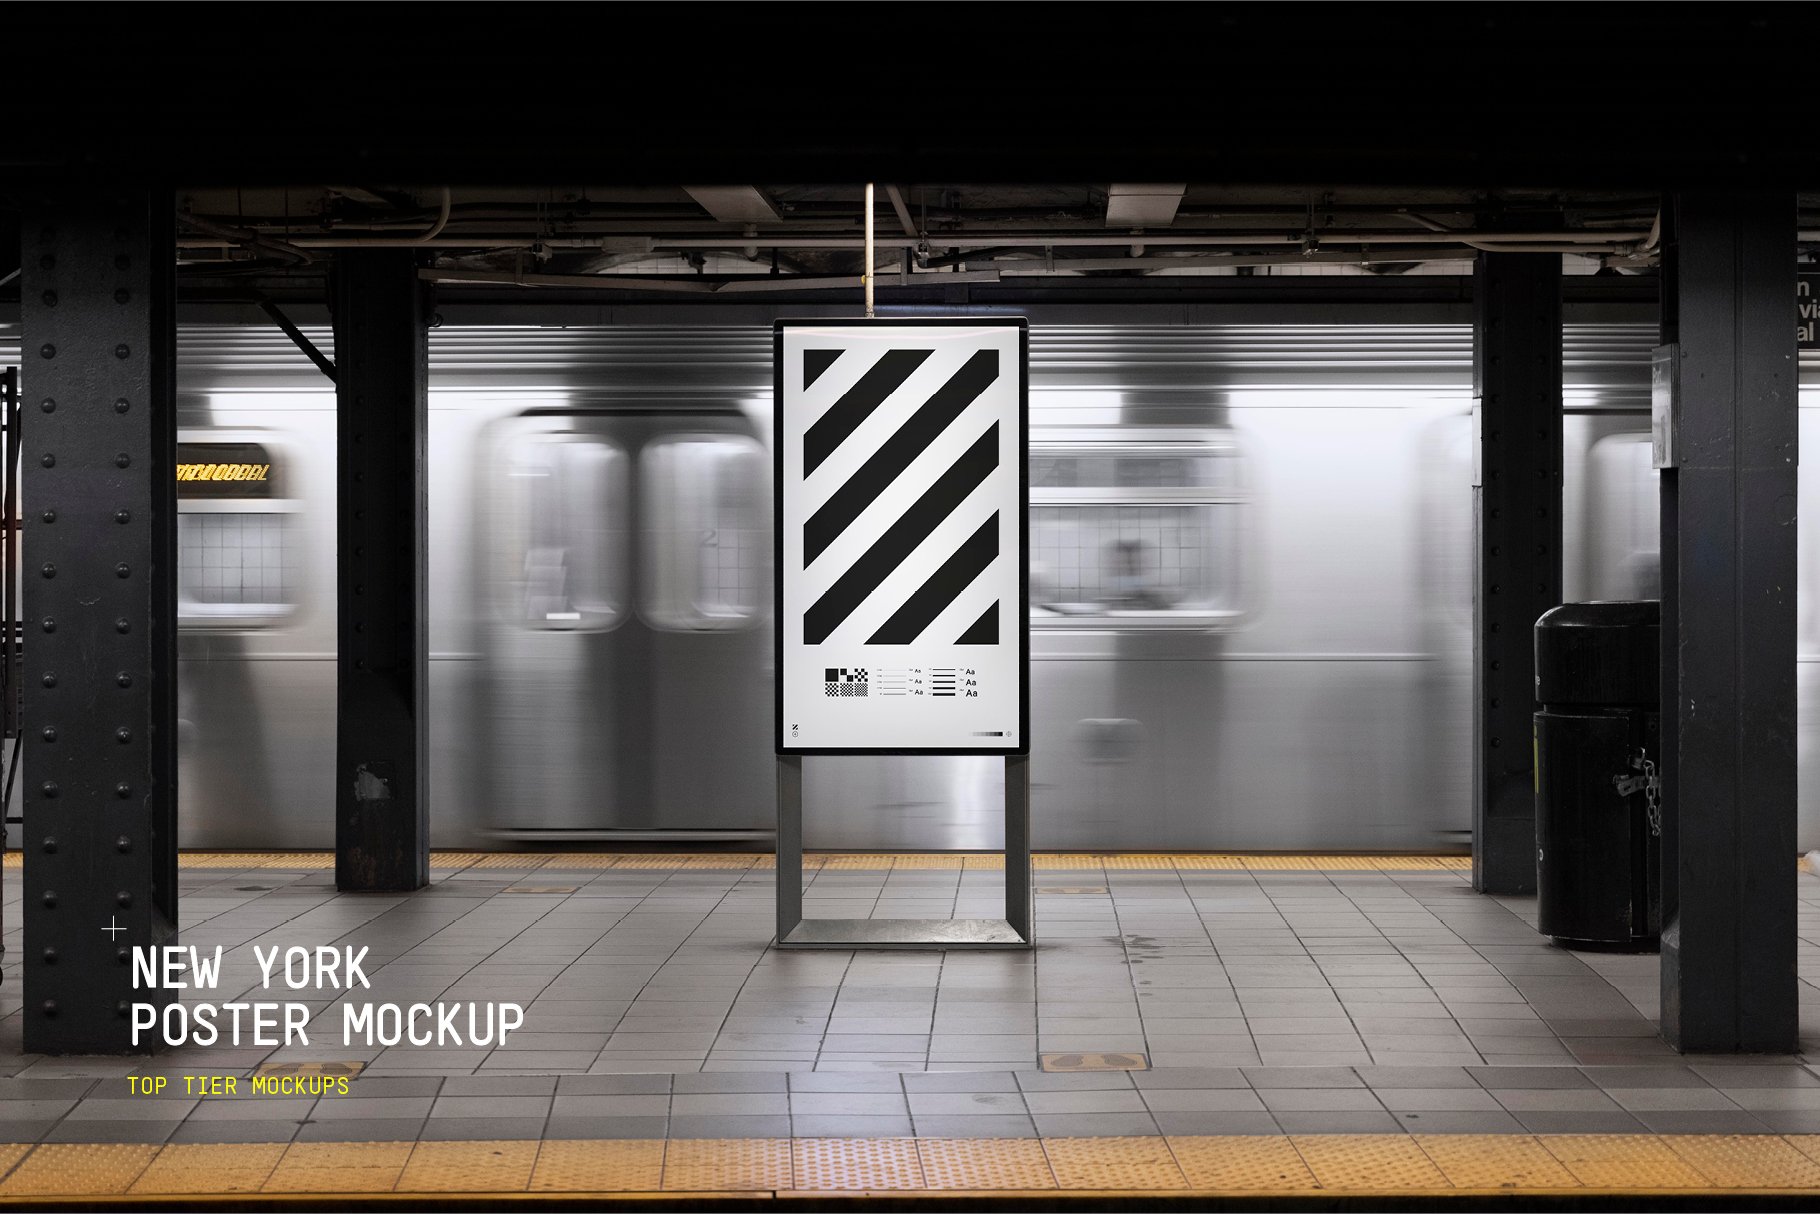 NYC Subway Poster Mockup cover image.